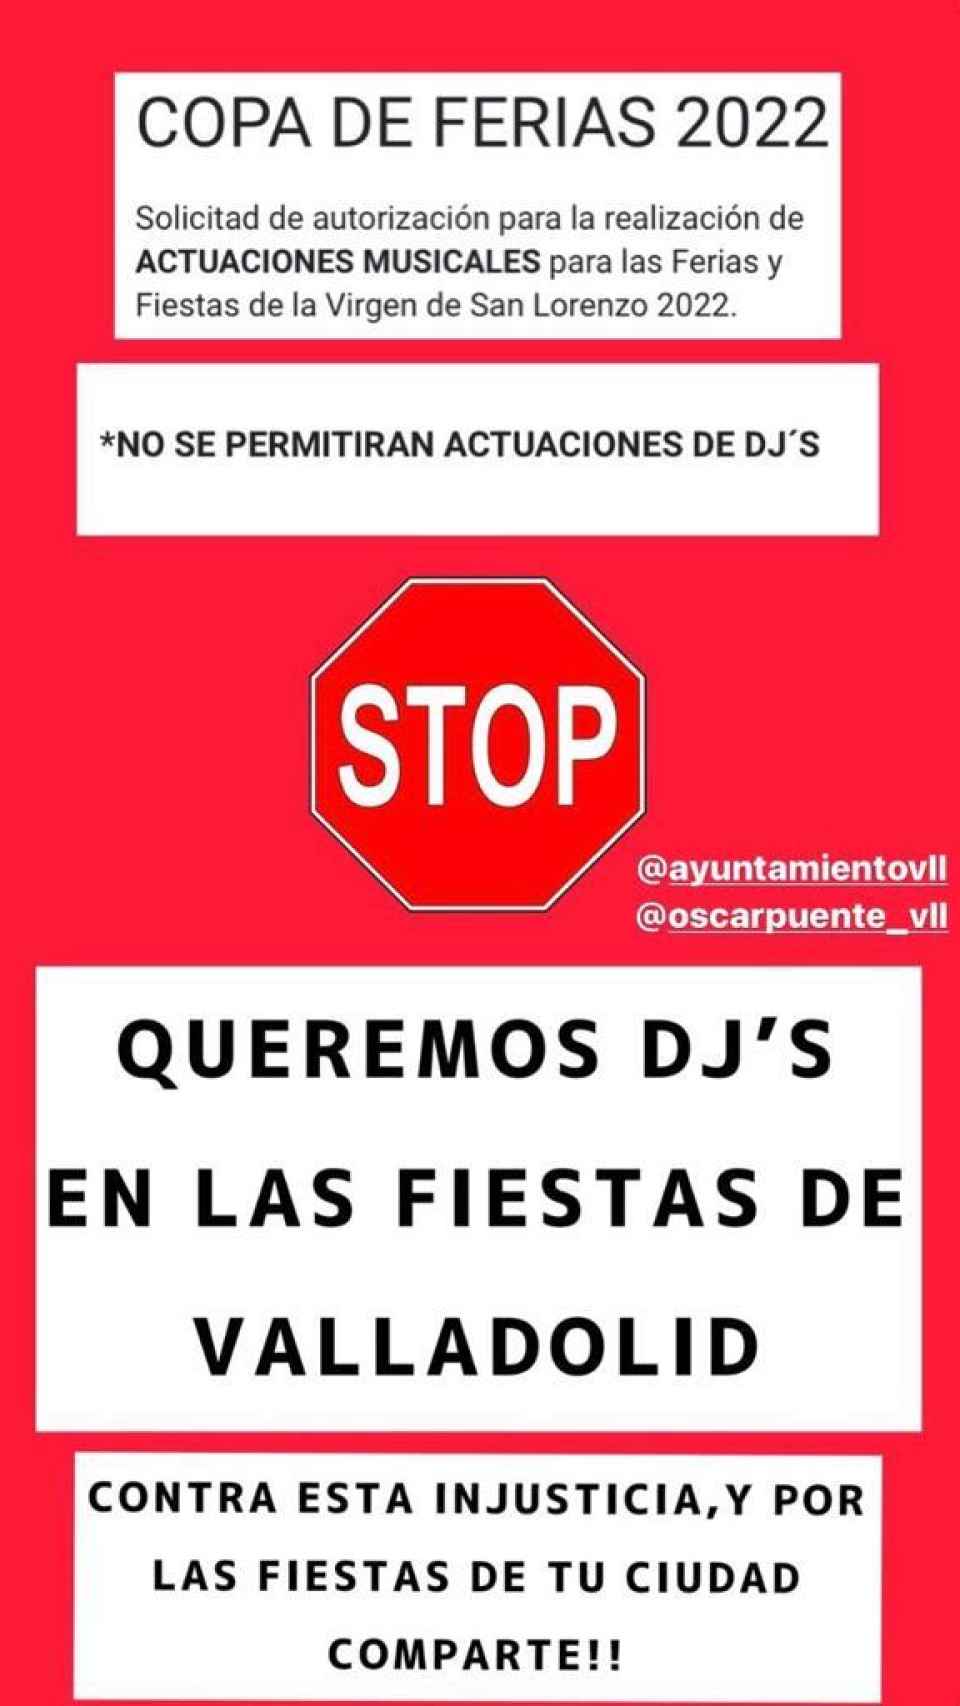 Mensaje de no participación de los DJs en las fiestas de Valladolid